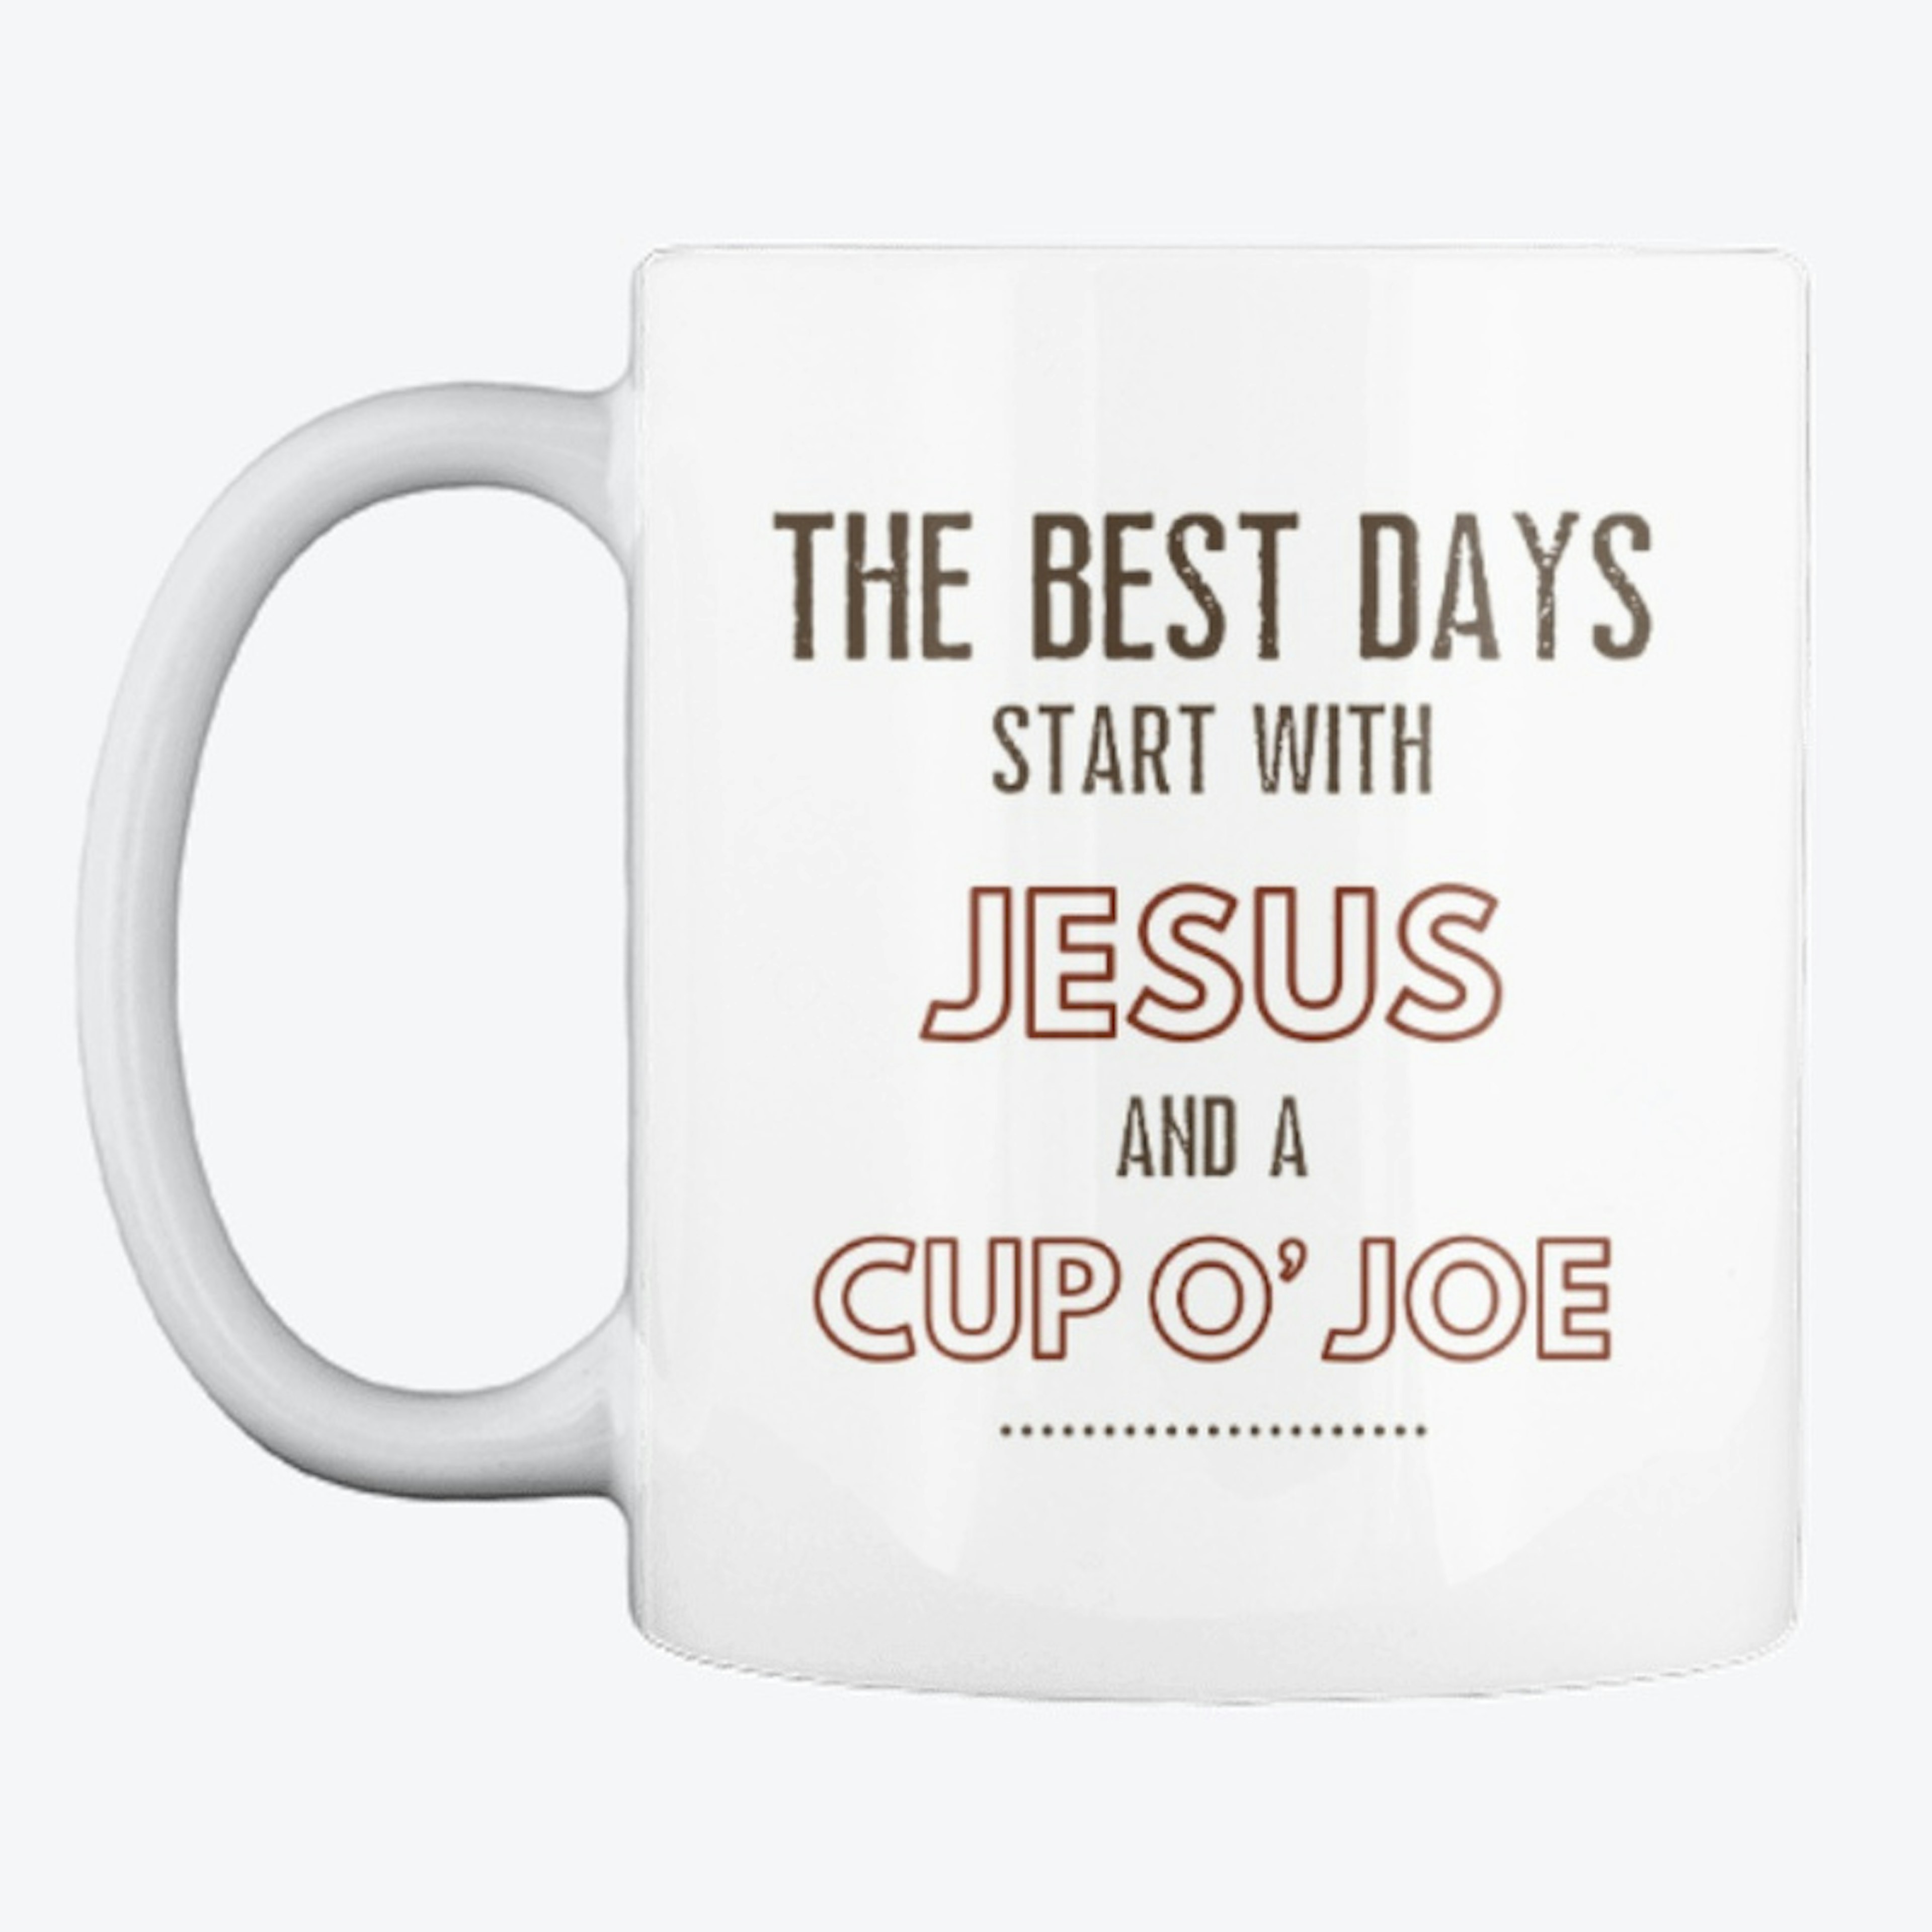 Jesus and a Cup O' Joe